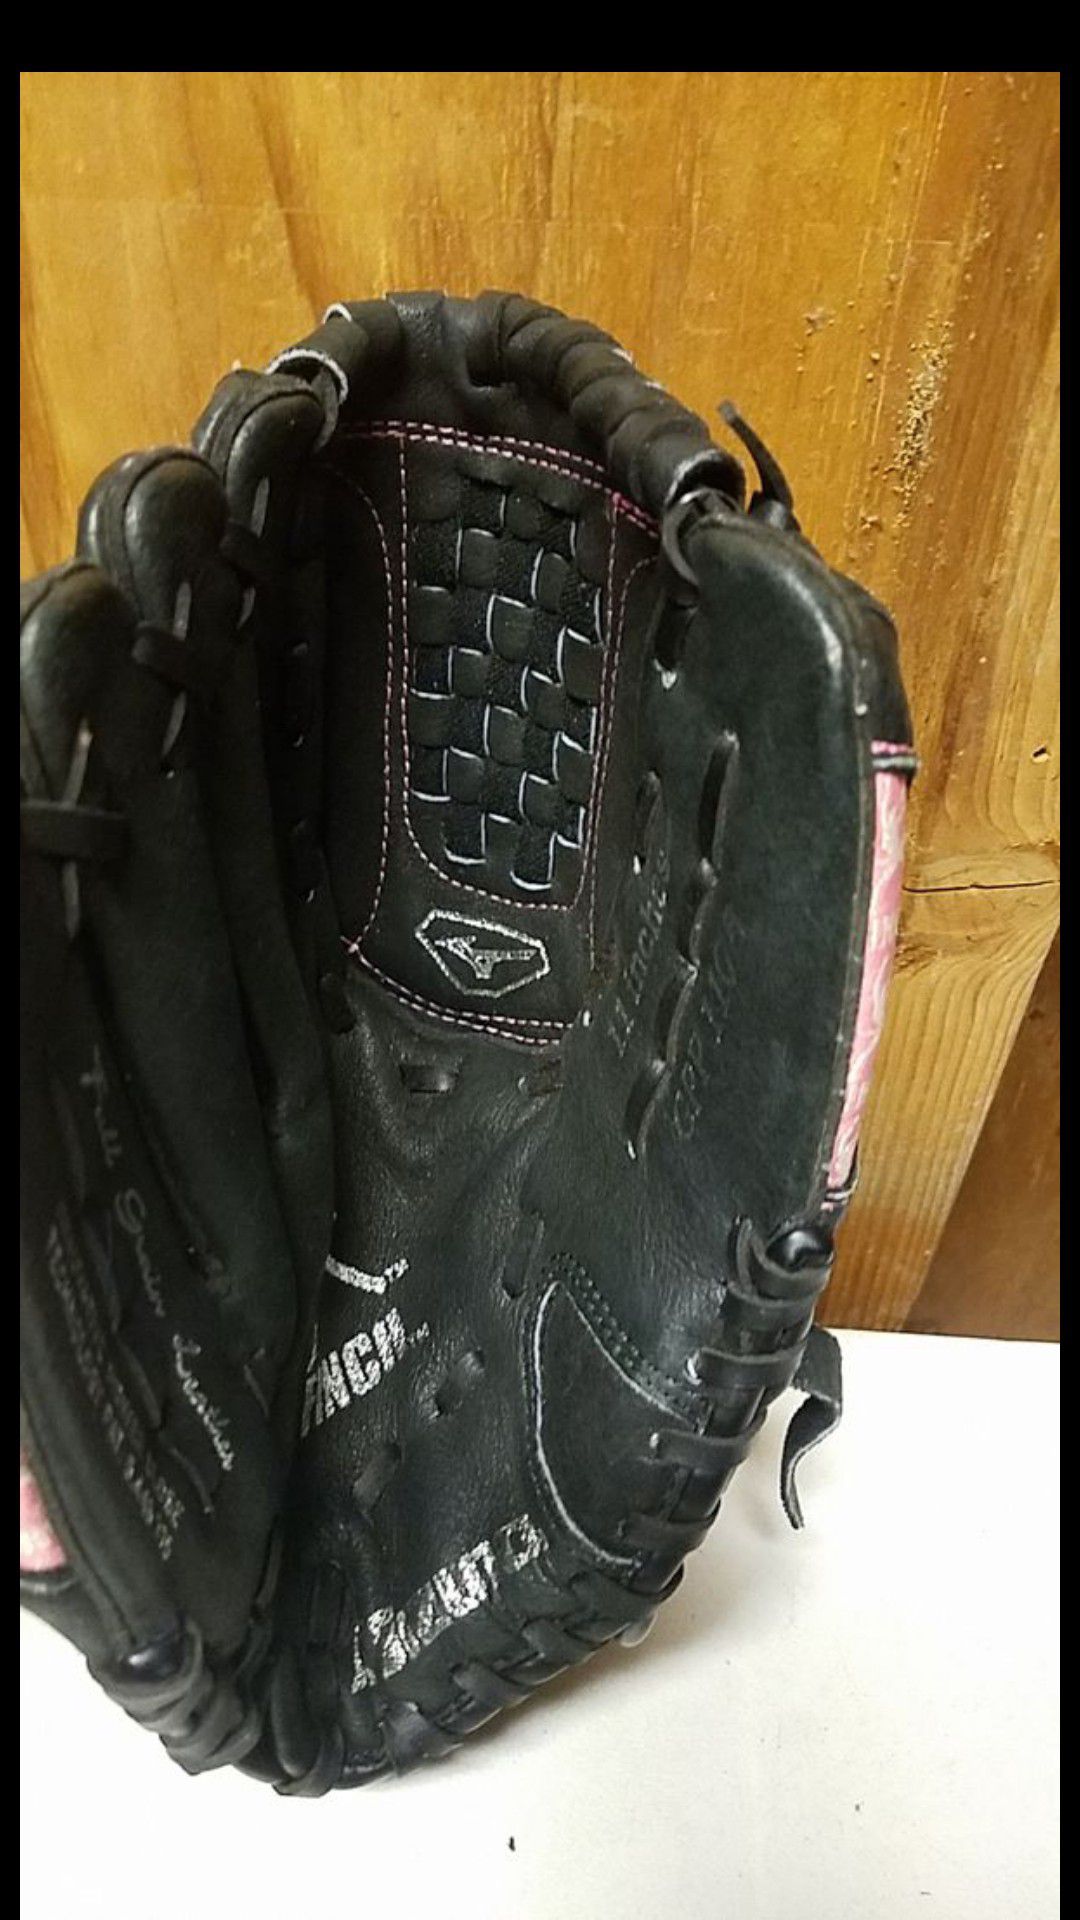 Mizuno softball glove, 11"